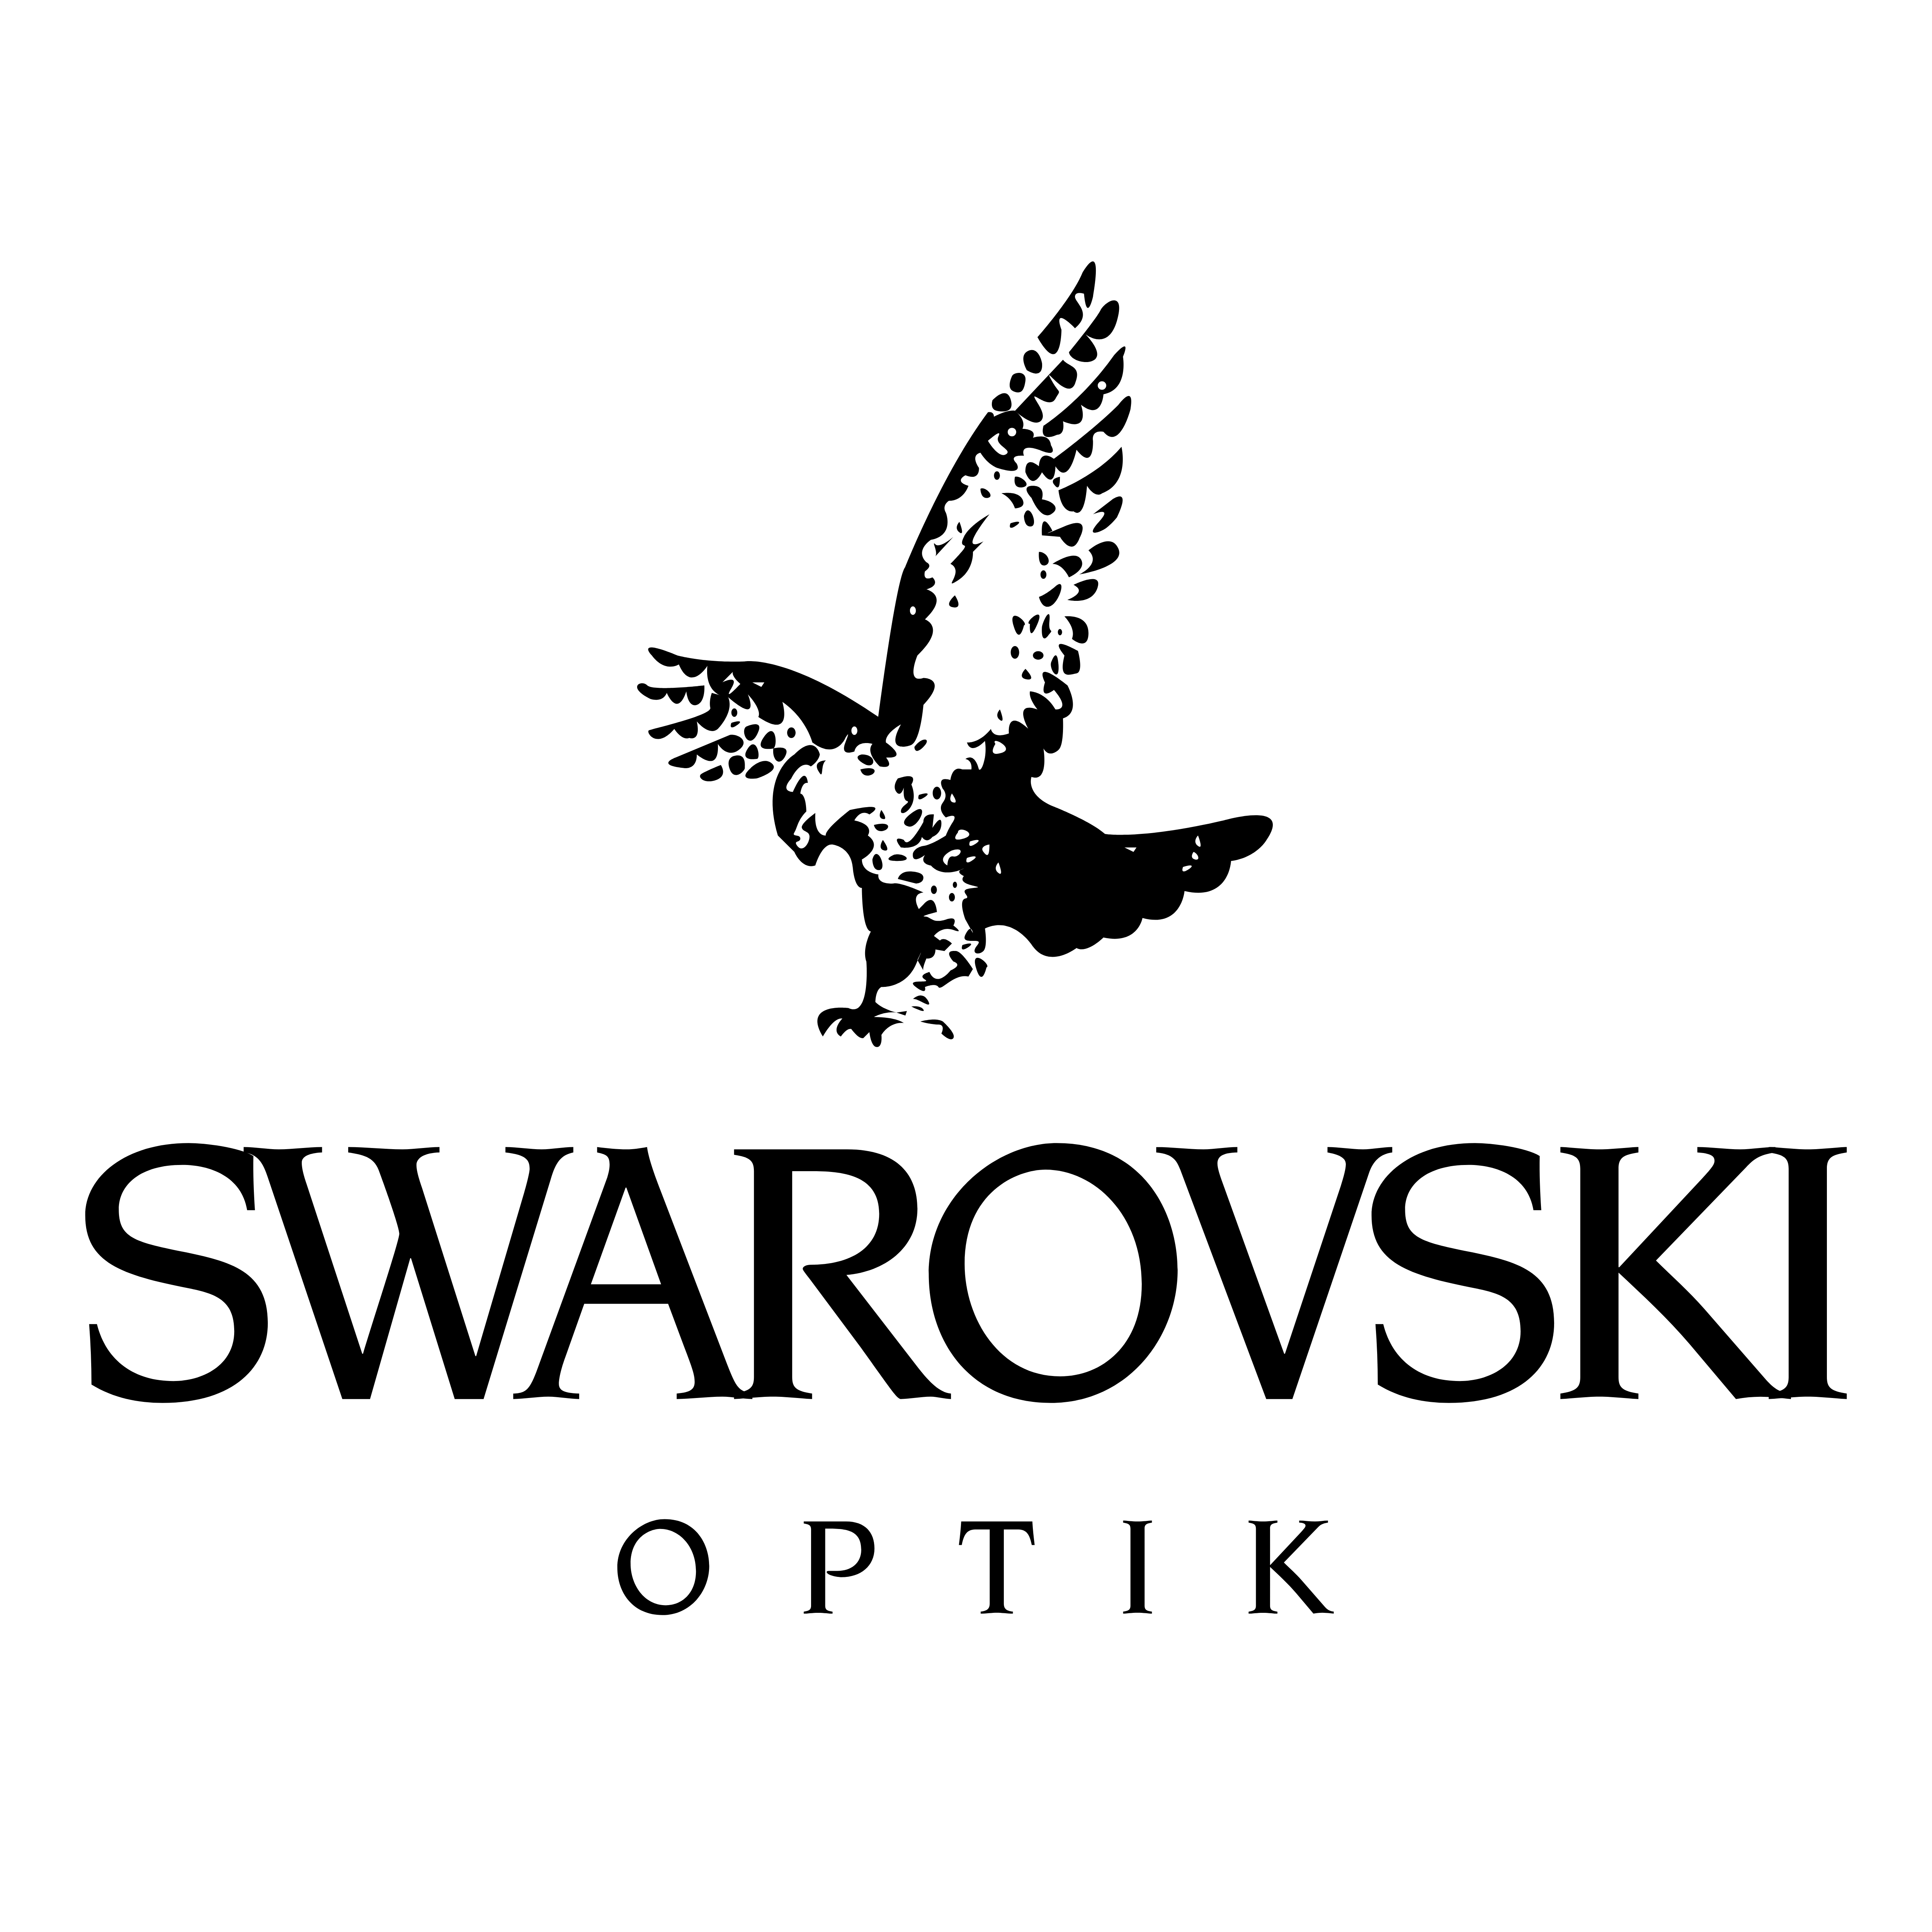 Каталог товаров Swarovski Optik - Официальный интернет магазина NaLabaze,купить товары бренда с доставкой по Санкт-Петербургу и Москве